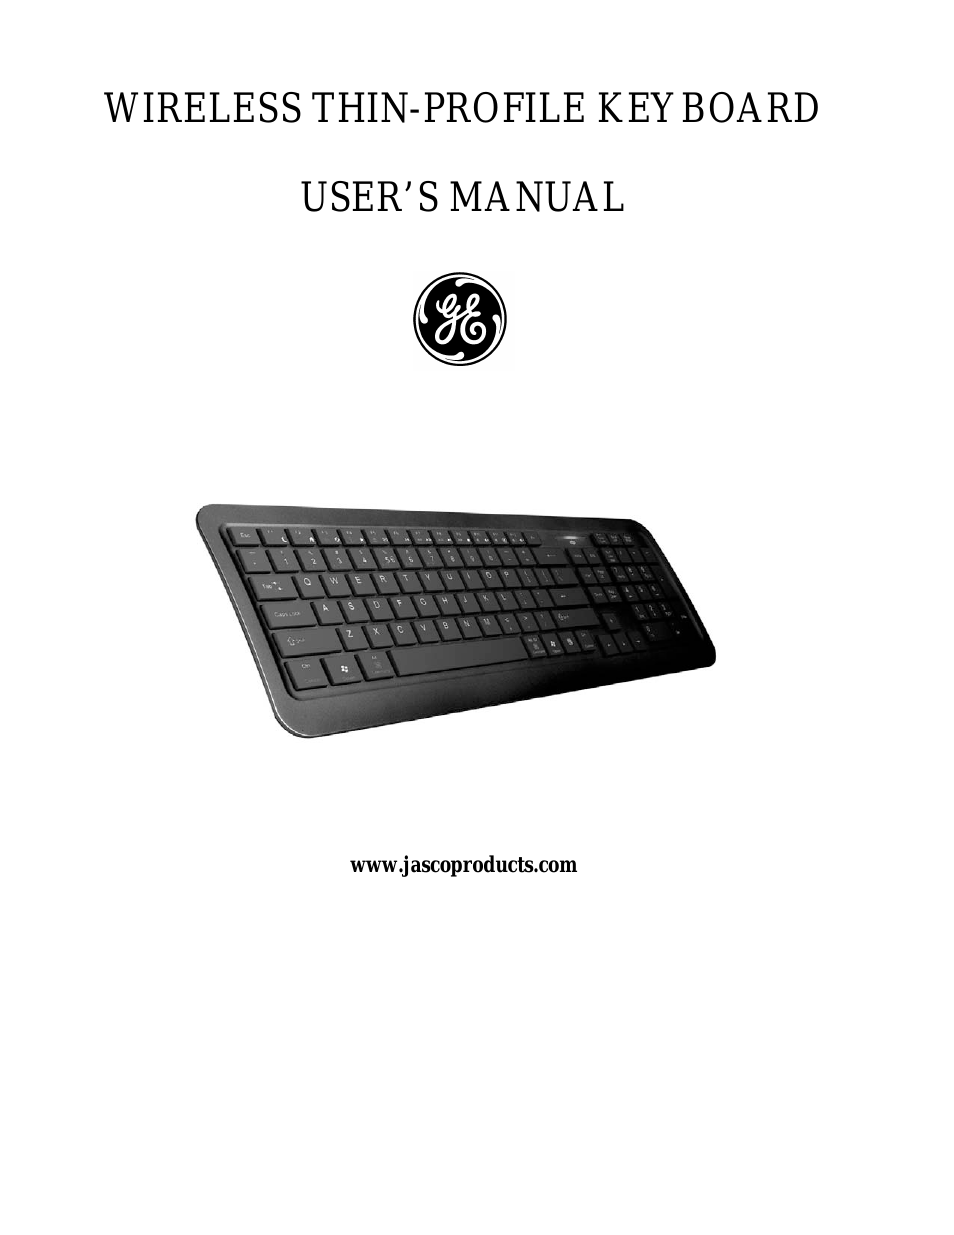 98615 GE Wireless Thin-Profile Keyboard